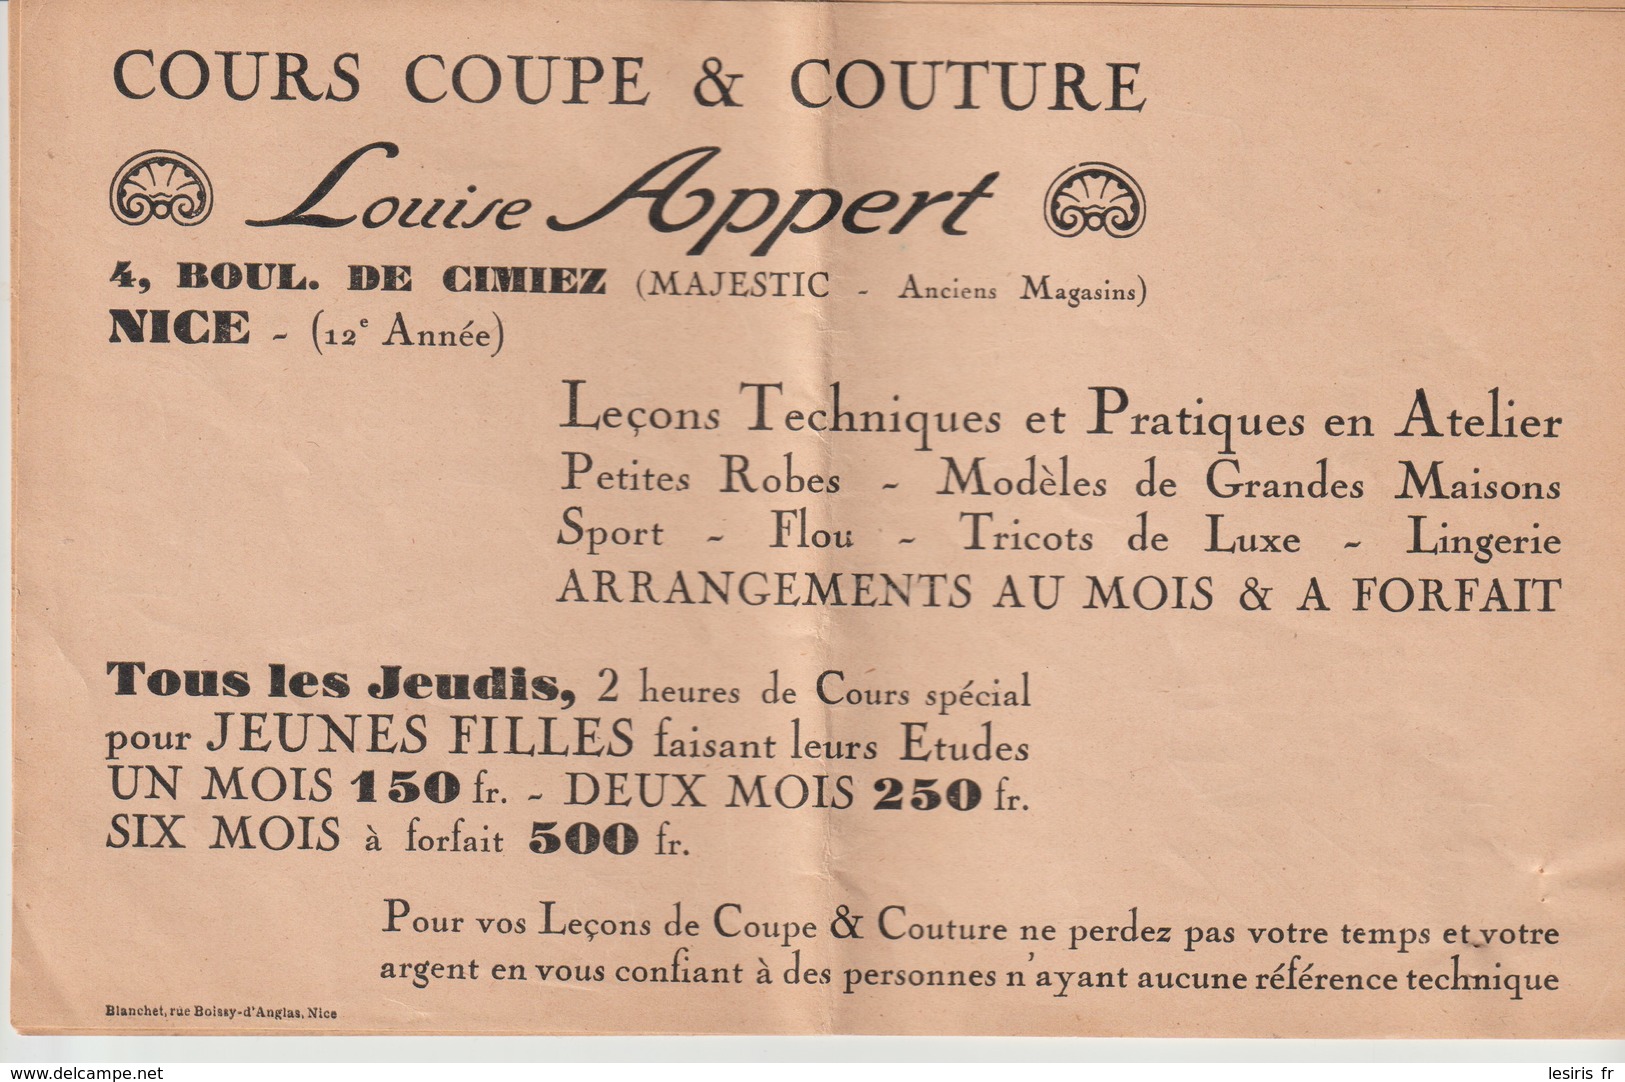 LOUISE APPERT - COURS COUPE & COUTURE - NICE - 4 Bd DE CIMIEZ - MAJESTIC - BLANCHET - 12° ANNEE - Publicidad